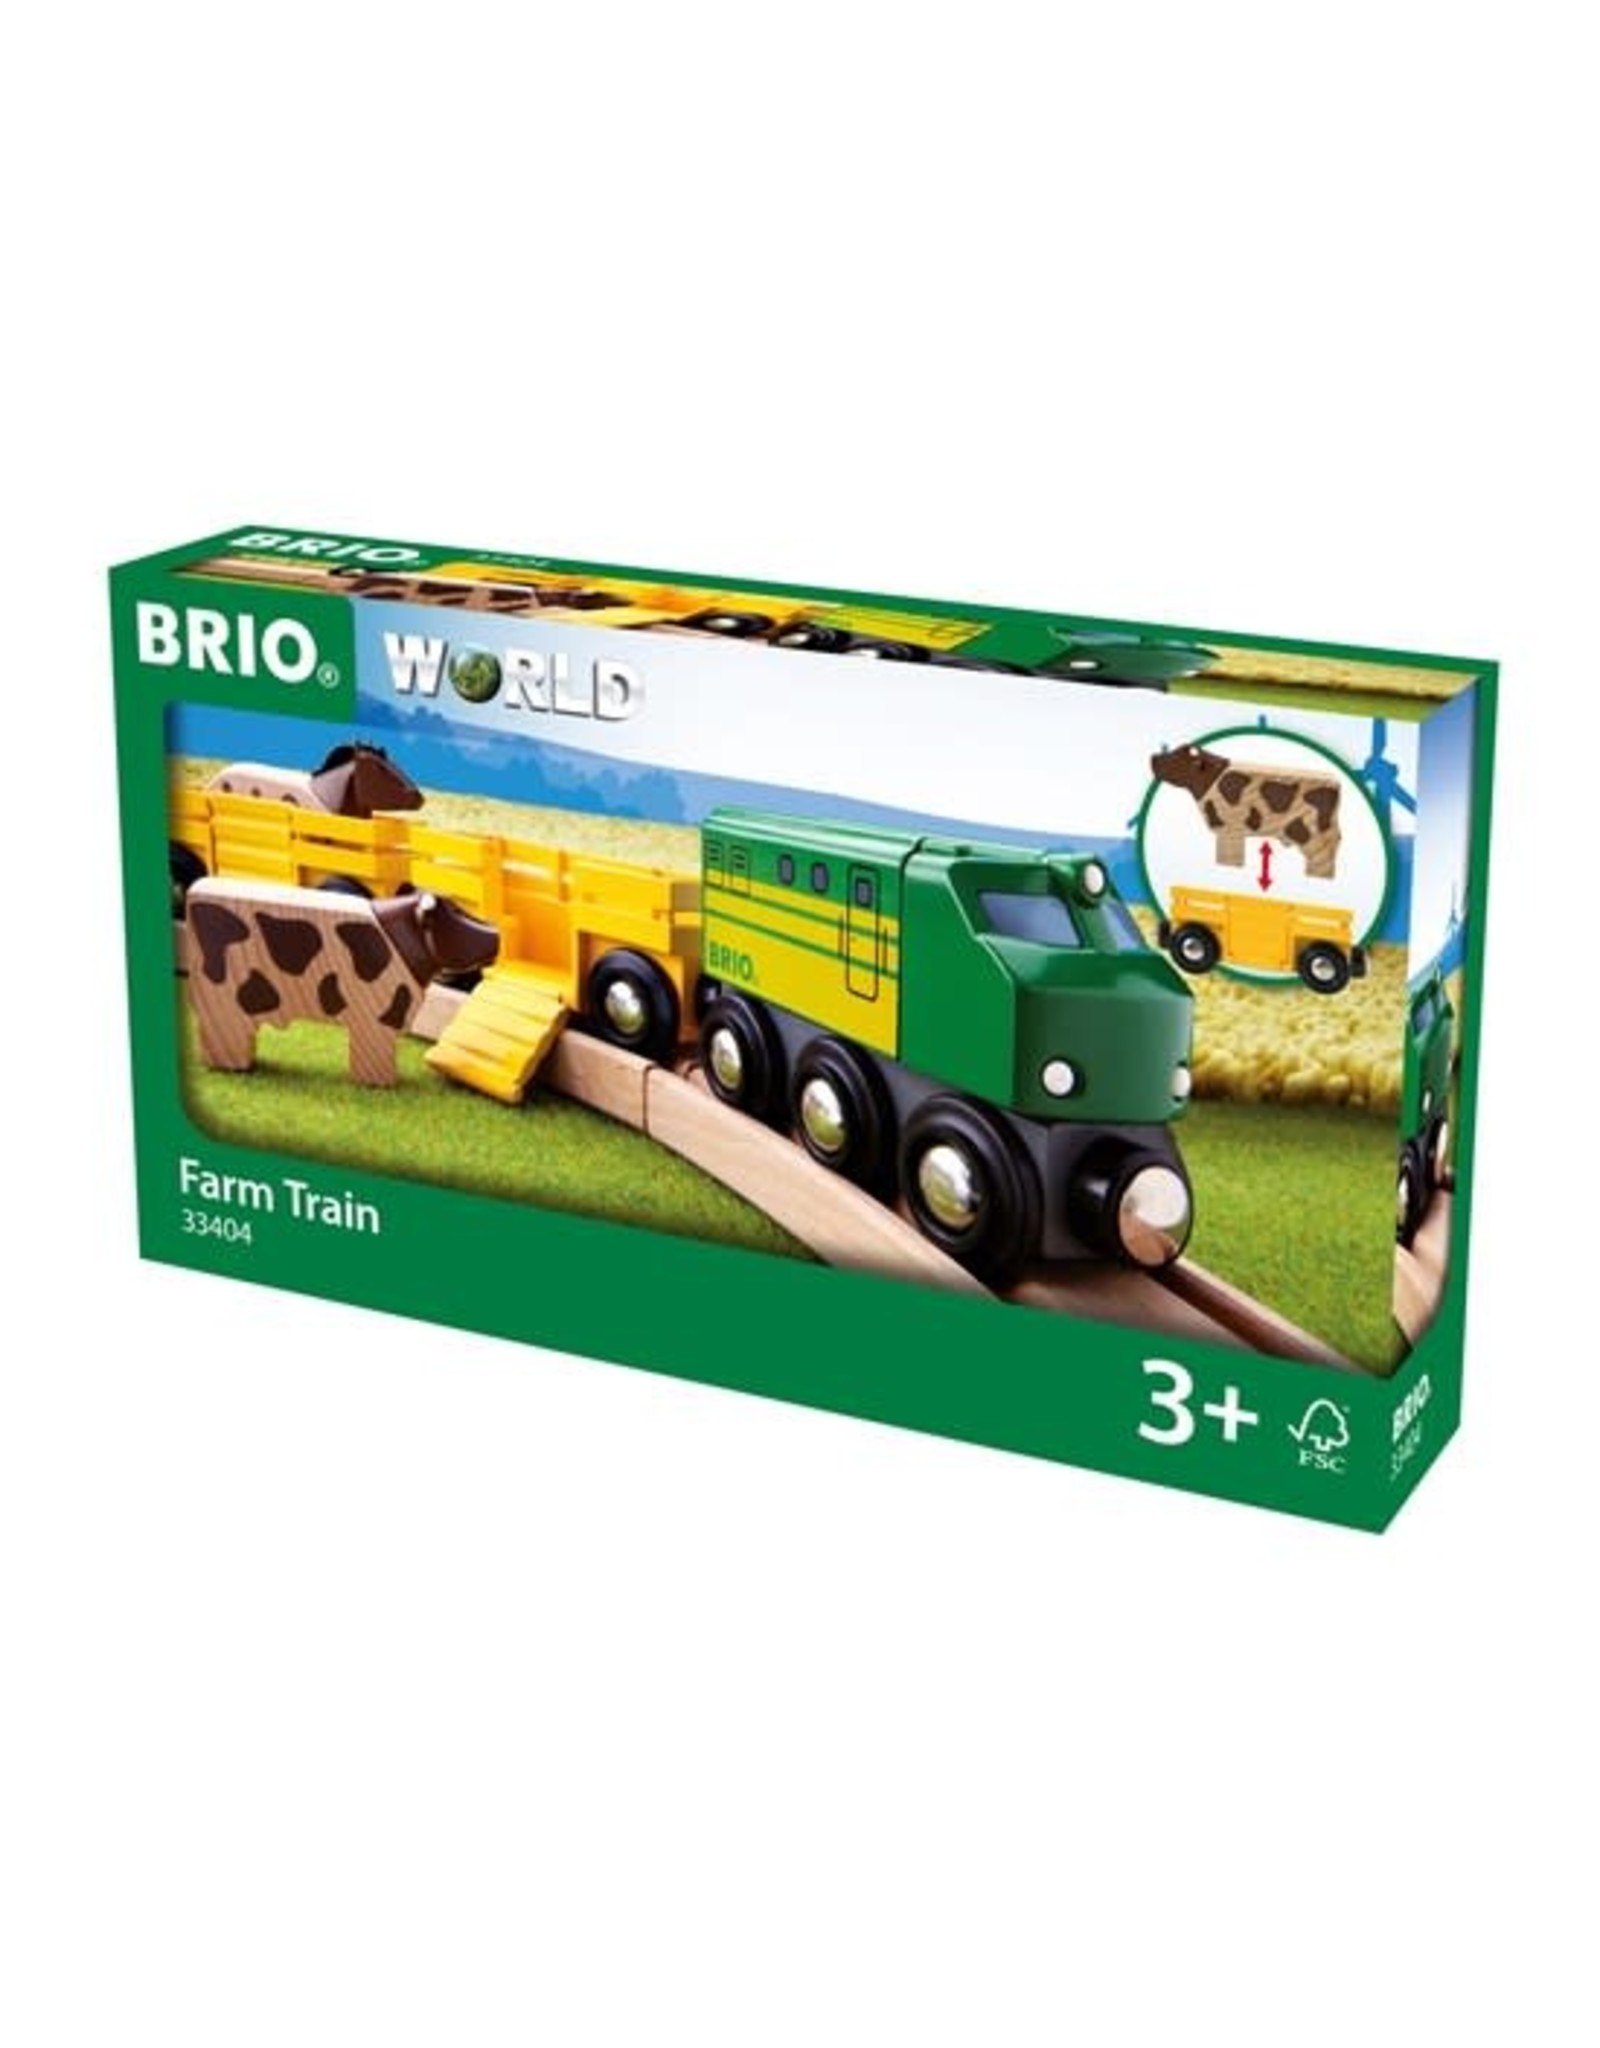 Brio Farm Train